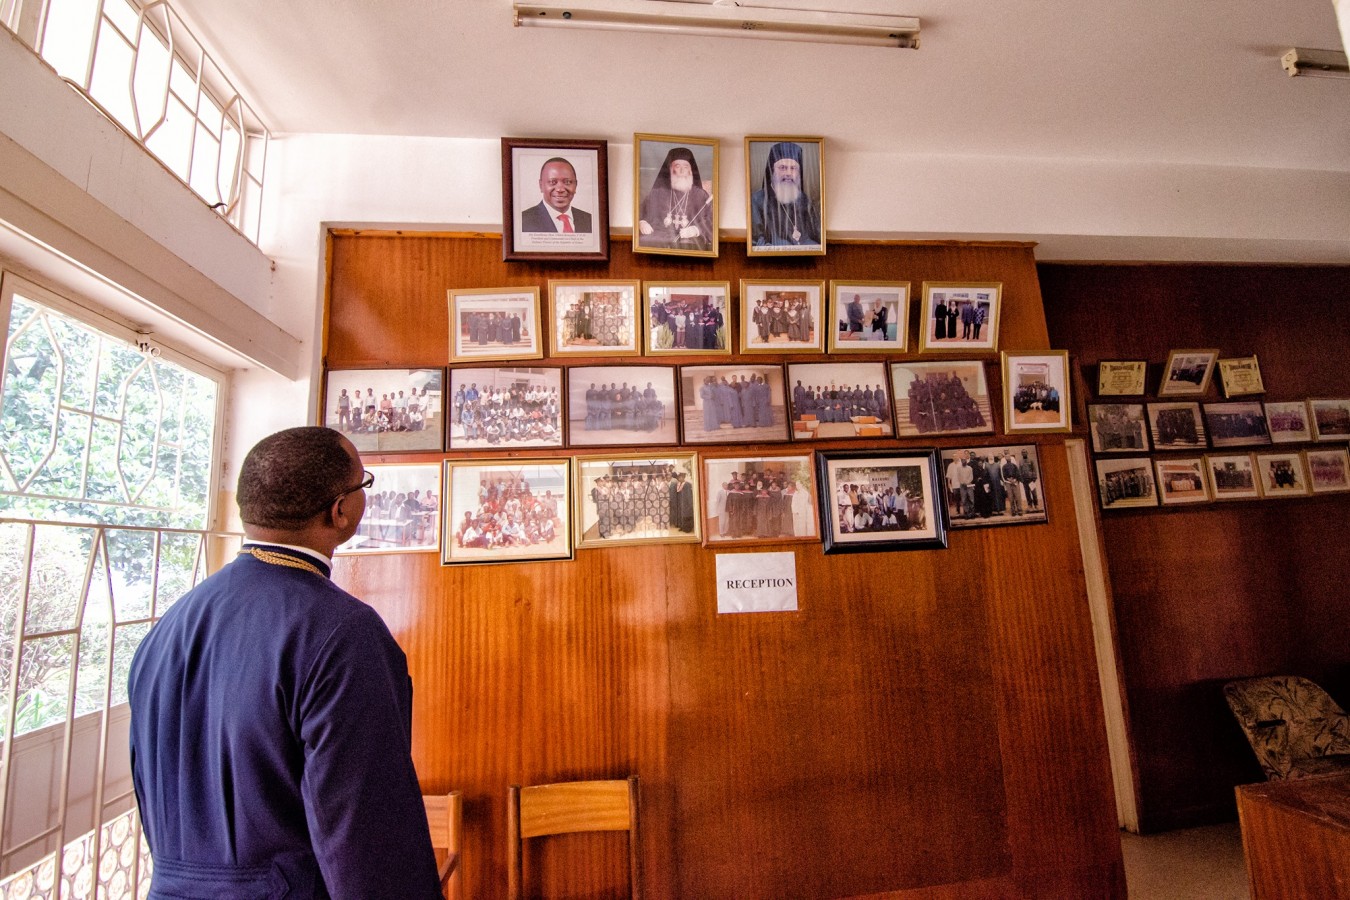 [AUDIO și FOTO]Provocările Ortodoxiei în Kenya